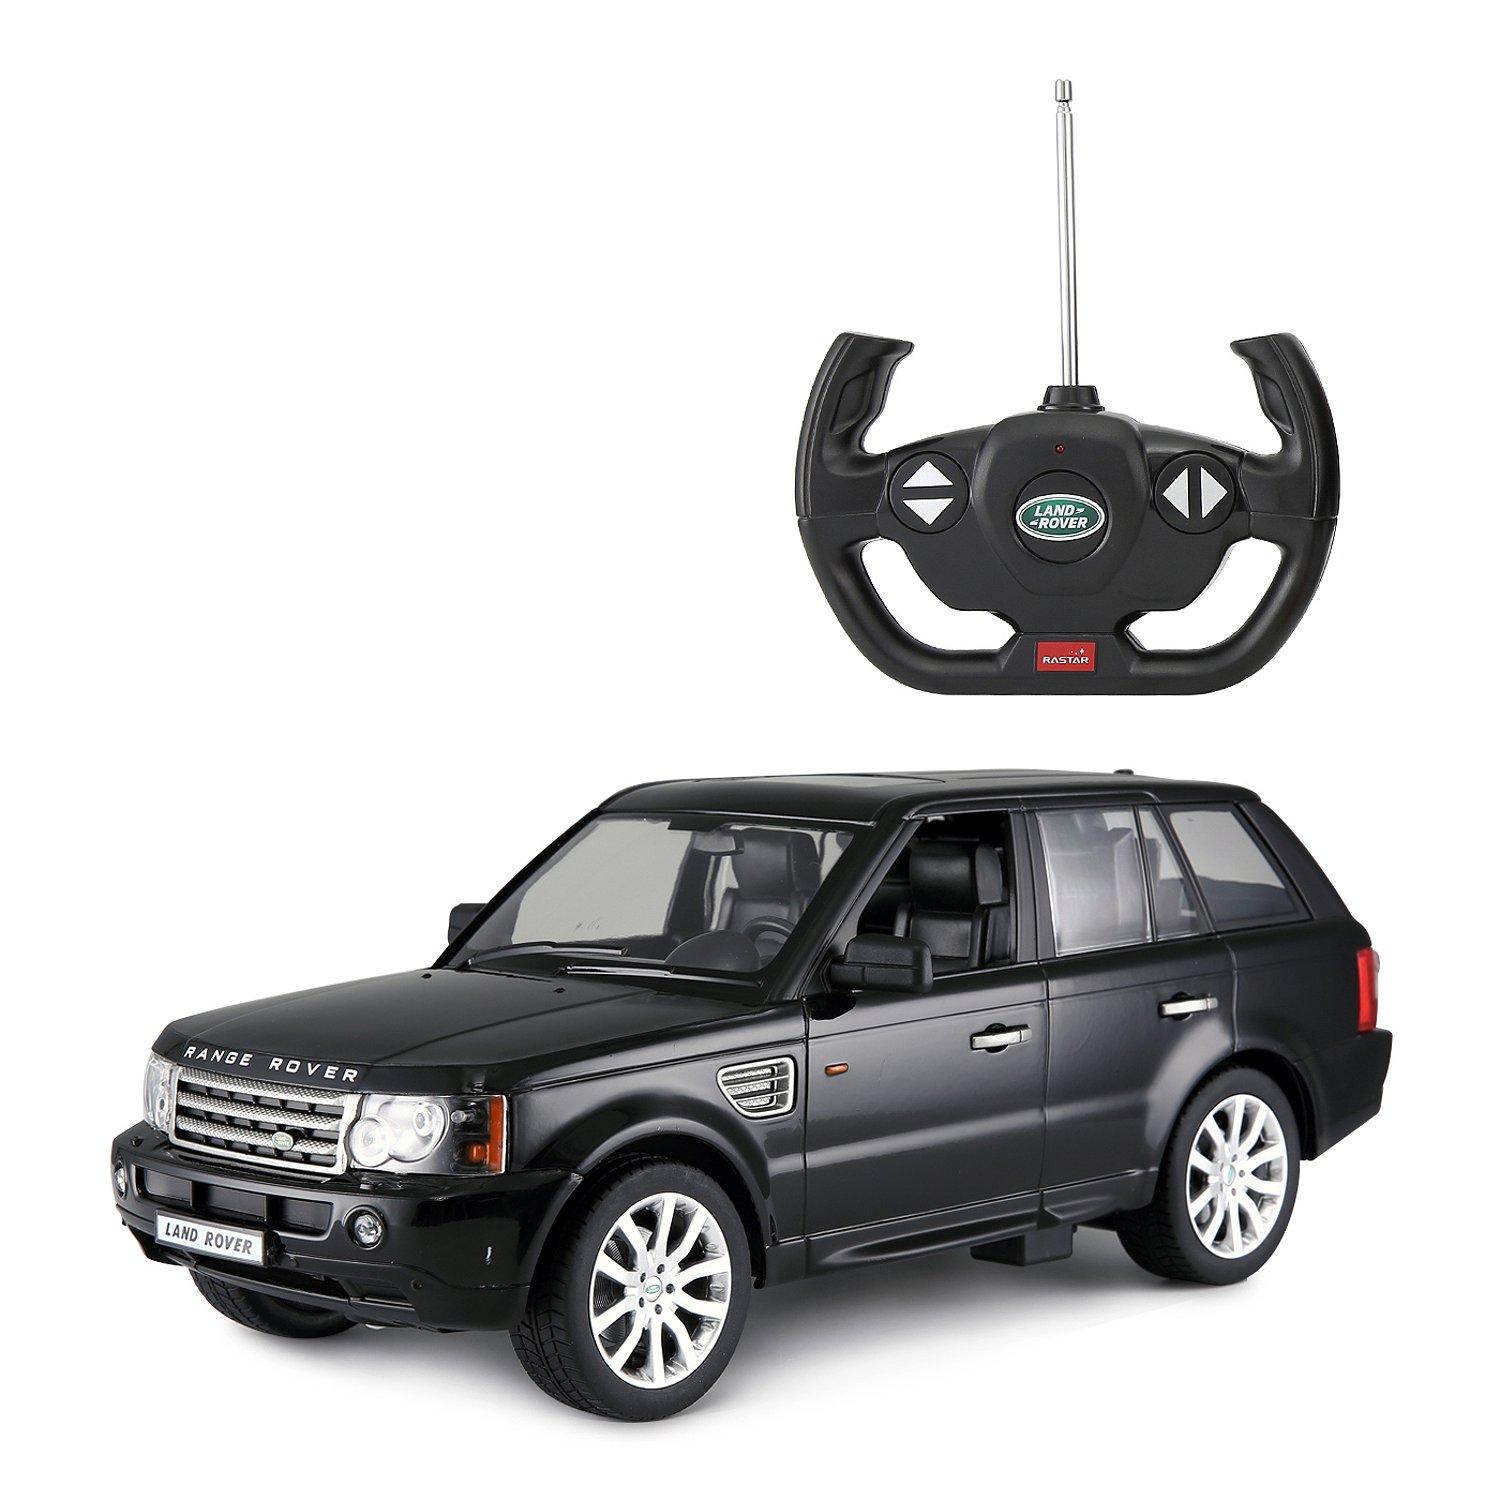 Rastar Машина на радиоуправлении 1:14 Range Rover Sport, цвет – черный rastar машина на радиоуправлении 1 14 range rover sport –